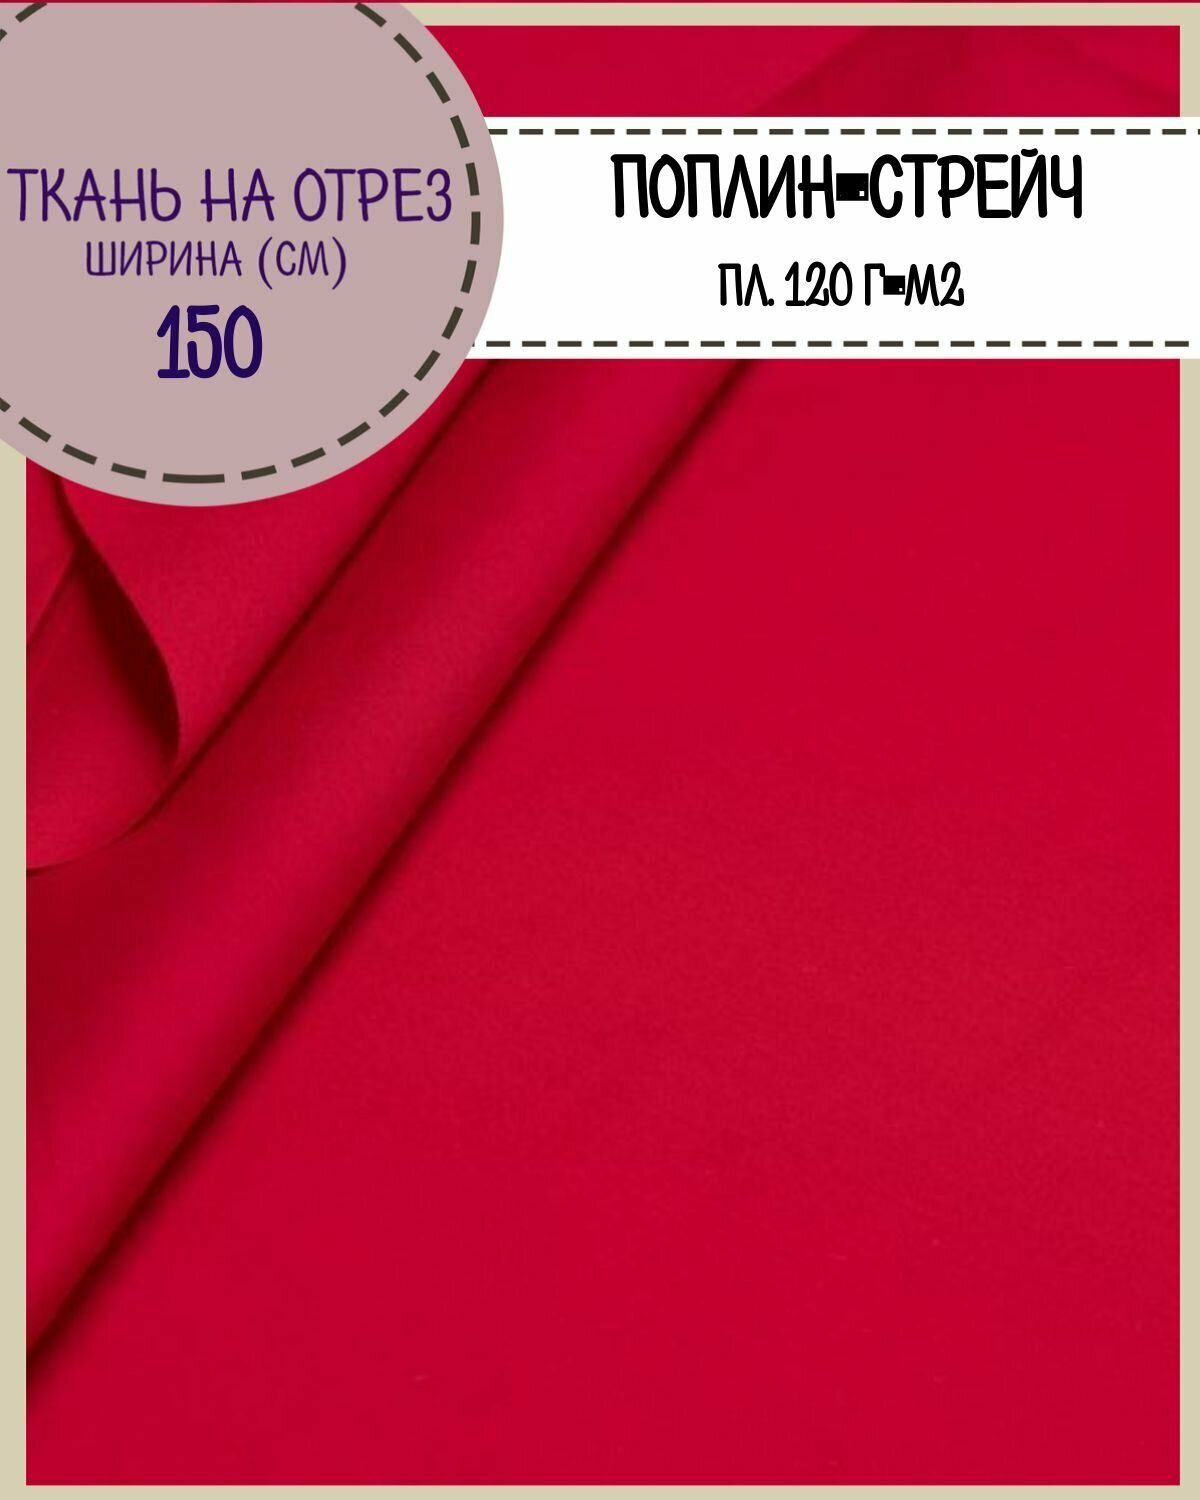 Ткань сорочечная/поплин-стрейч/для блузок рубашек пл. 120 г/м2 ш-150 см на отрез цена за пог. метр цв. Красный